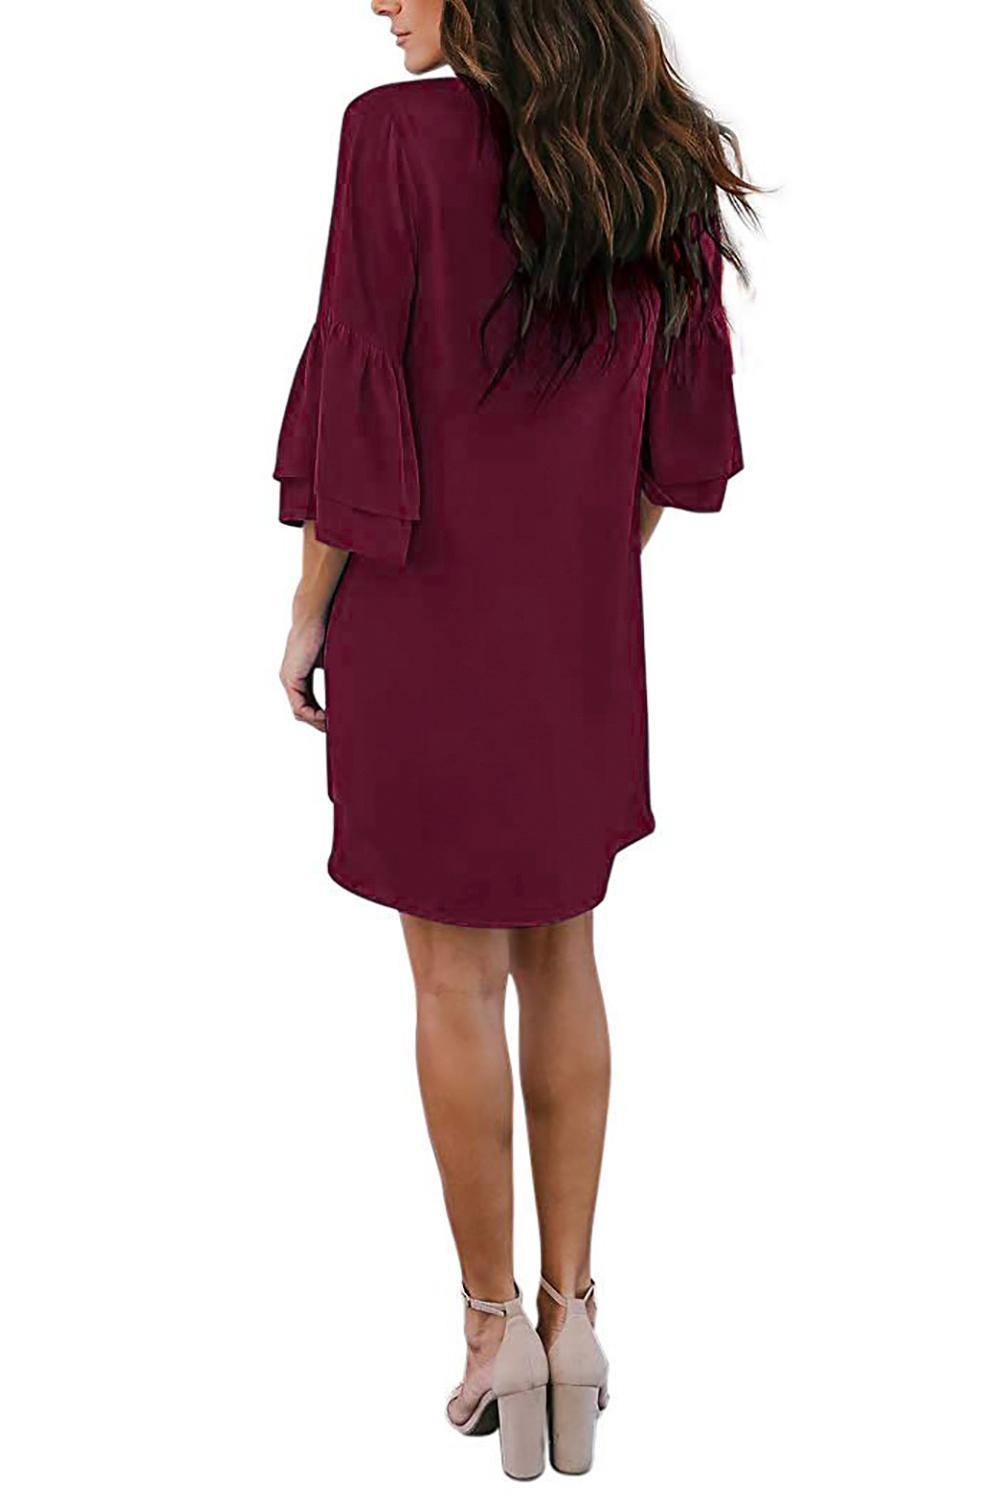 V Neck Buttoned Bell Sleeve Shift Shirt Dress - L & M Kee, LLC